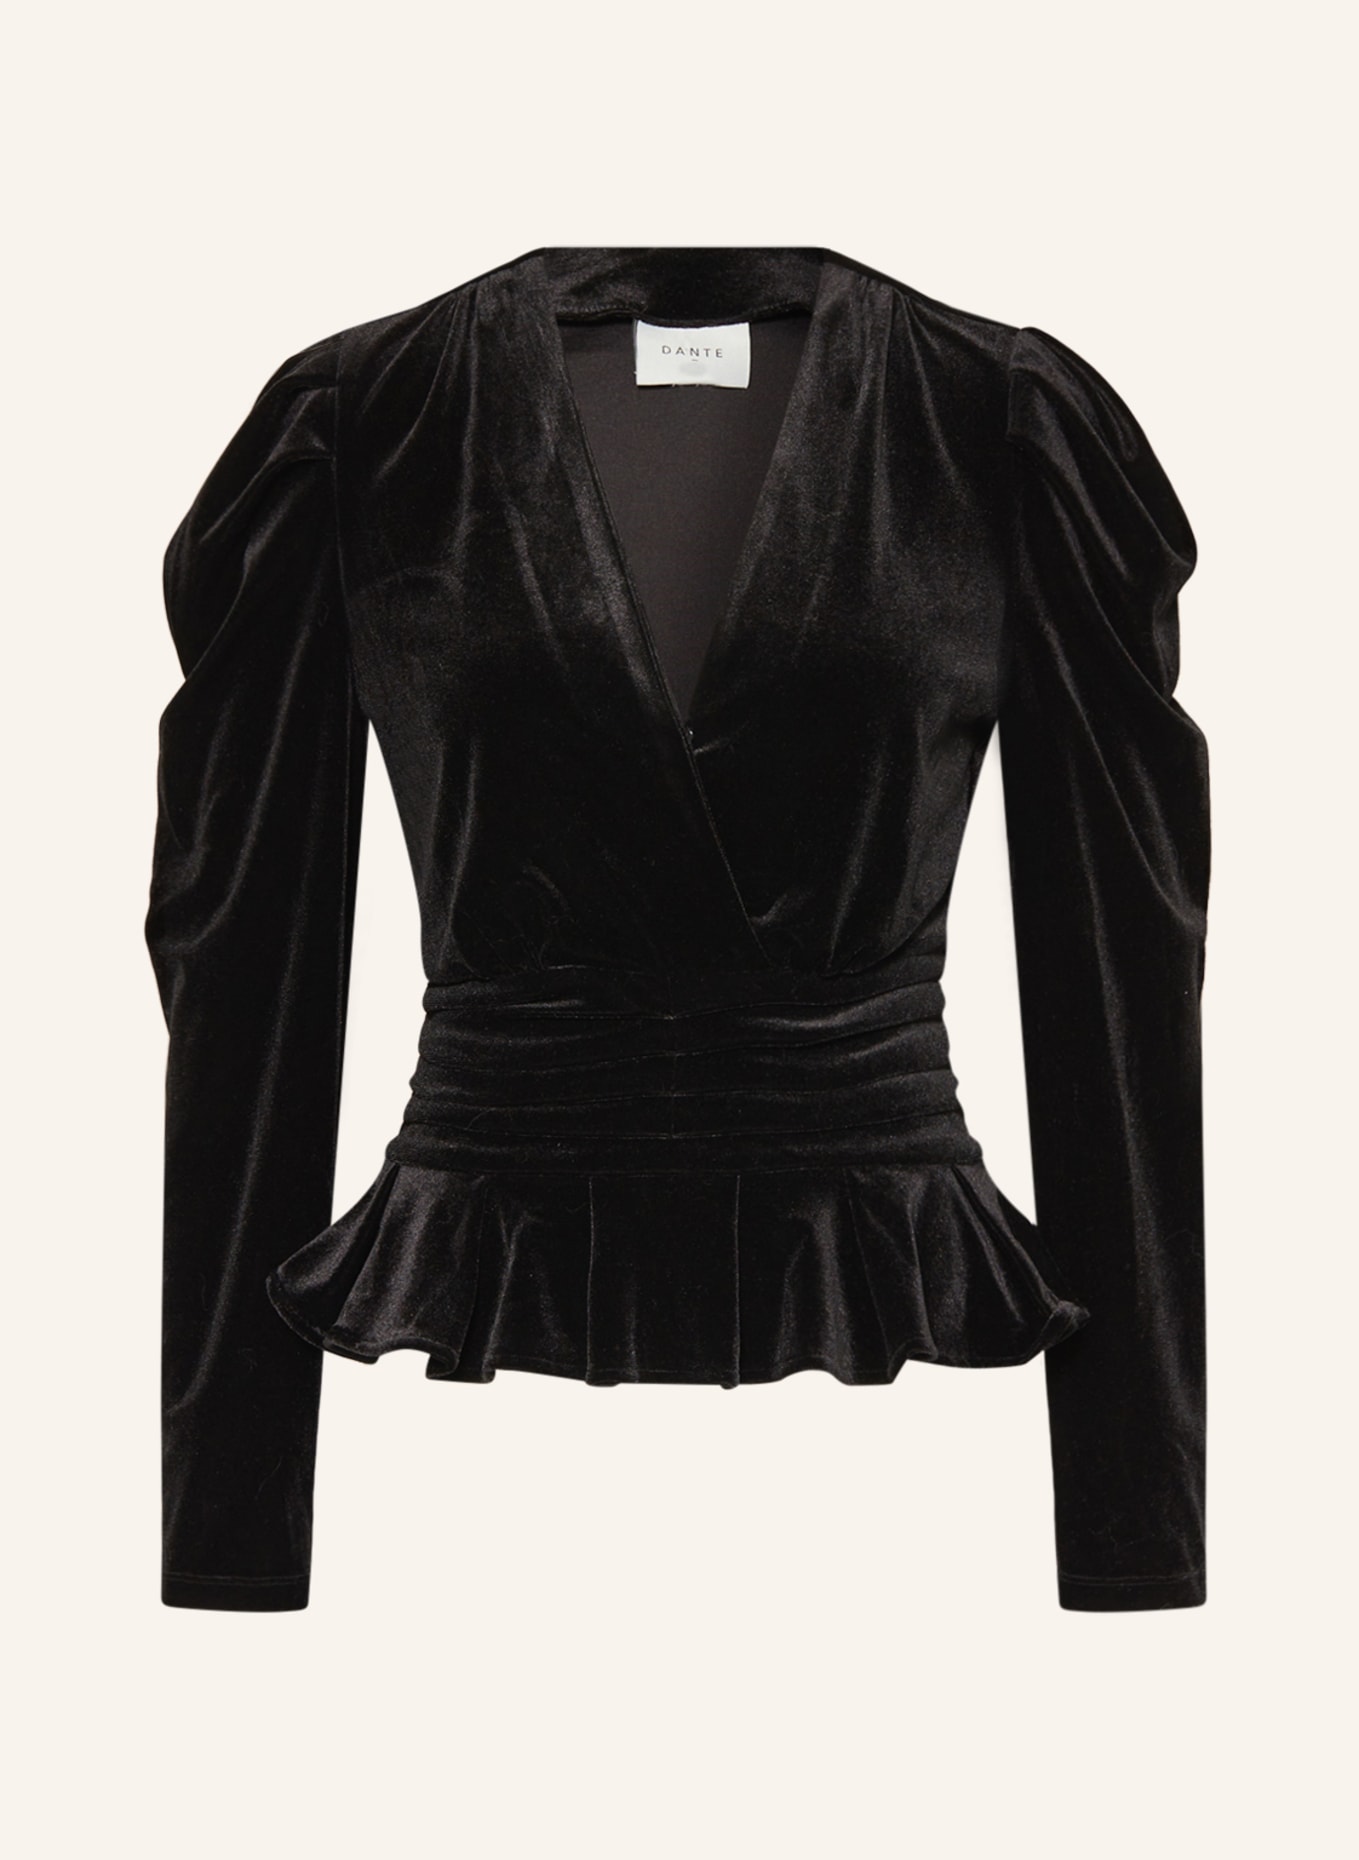 DANTE6 Shirt blouse SMOKE made of velvet, Color: BLACK (Image 1)